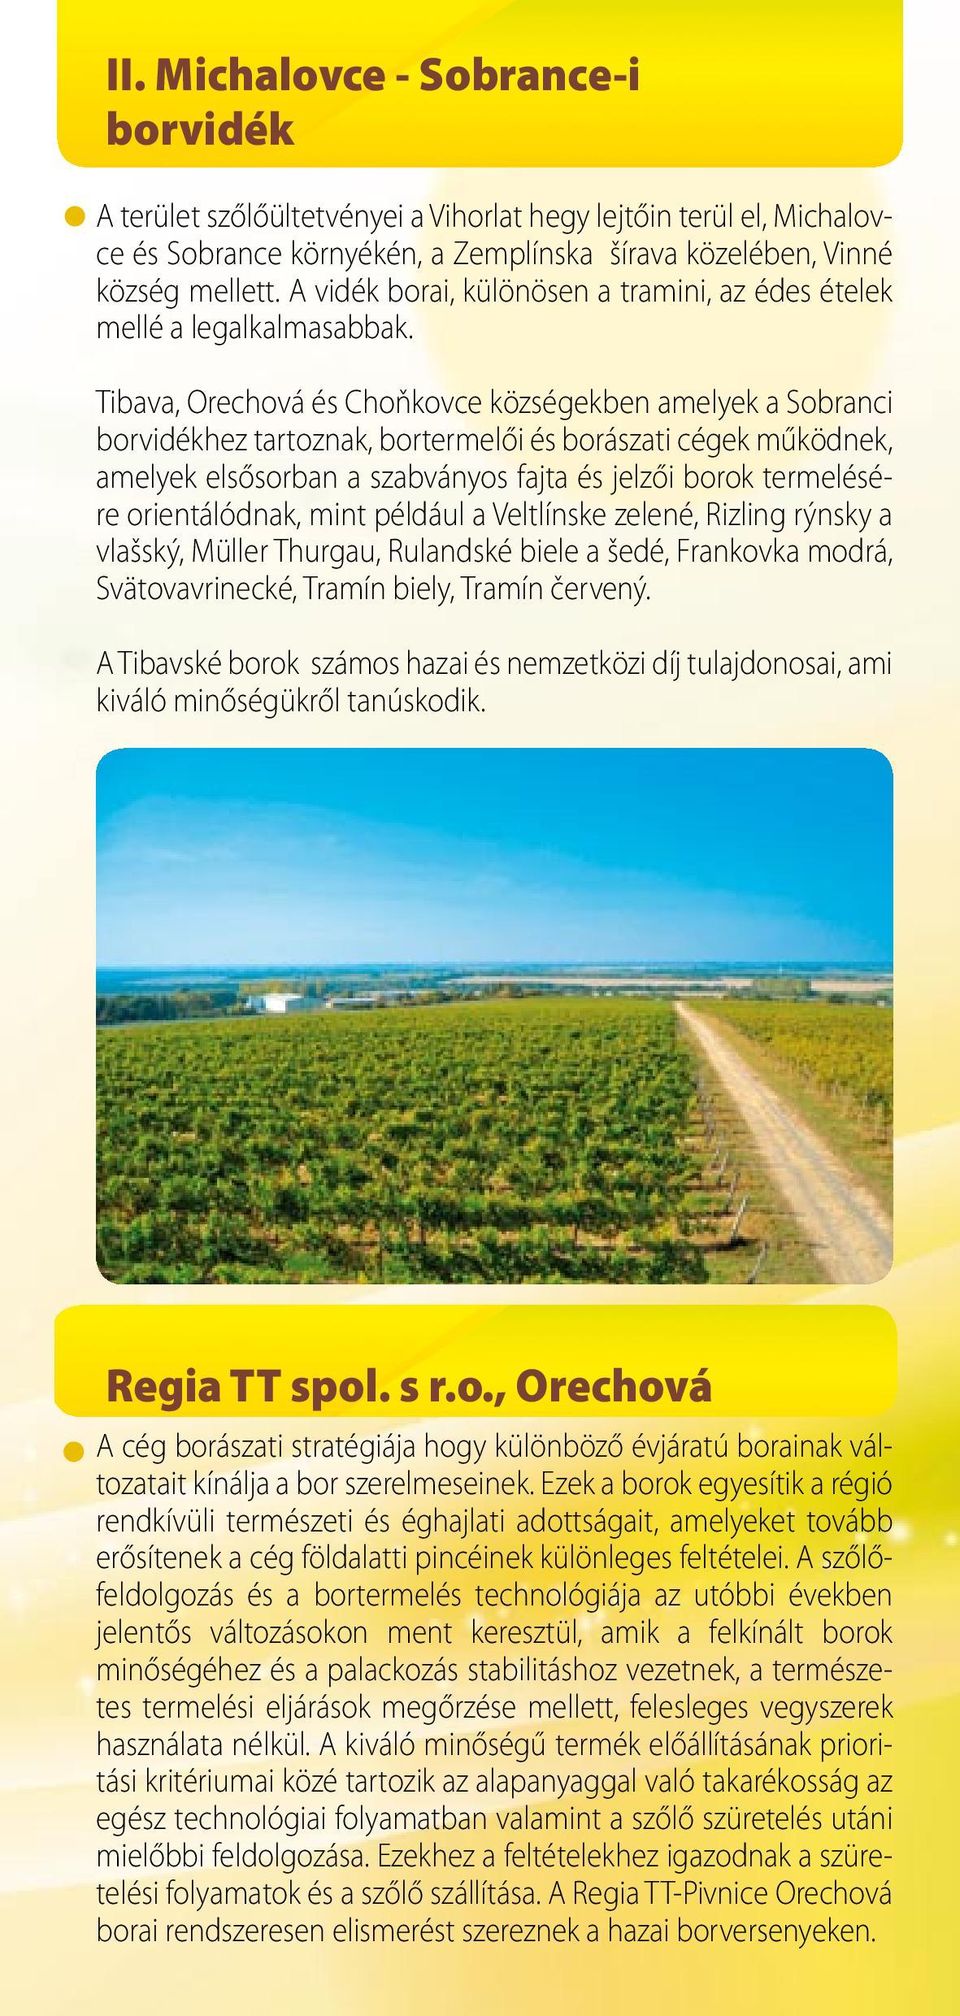 Tibava, Orechová és Choňkovce községekben amelyek a Sobranci borvidékhez tartoznak, bortermelői és borászati cégek működnek, amelyek elsősorban a szabványos fajta és jelzői borok termelésére